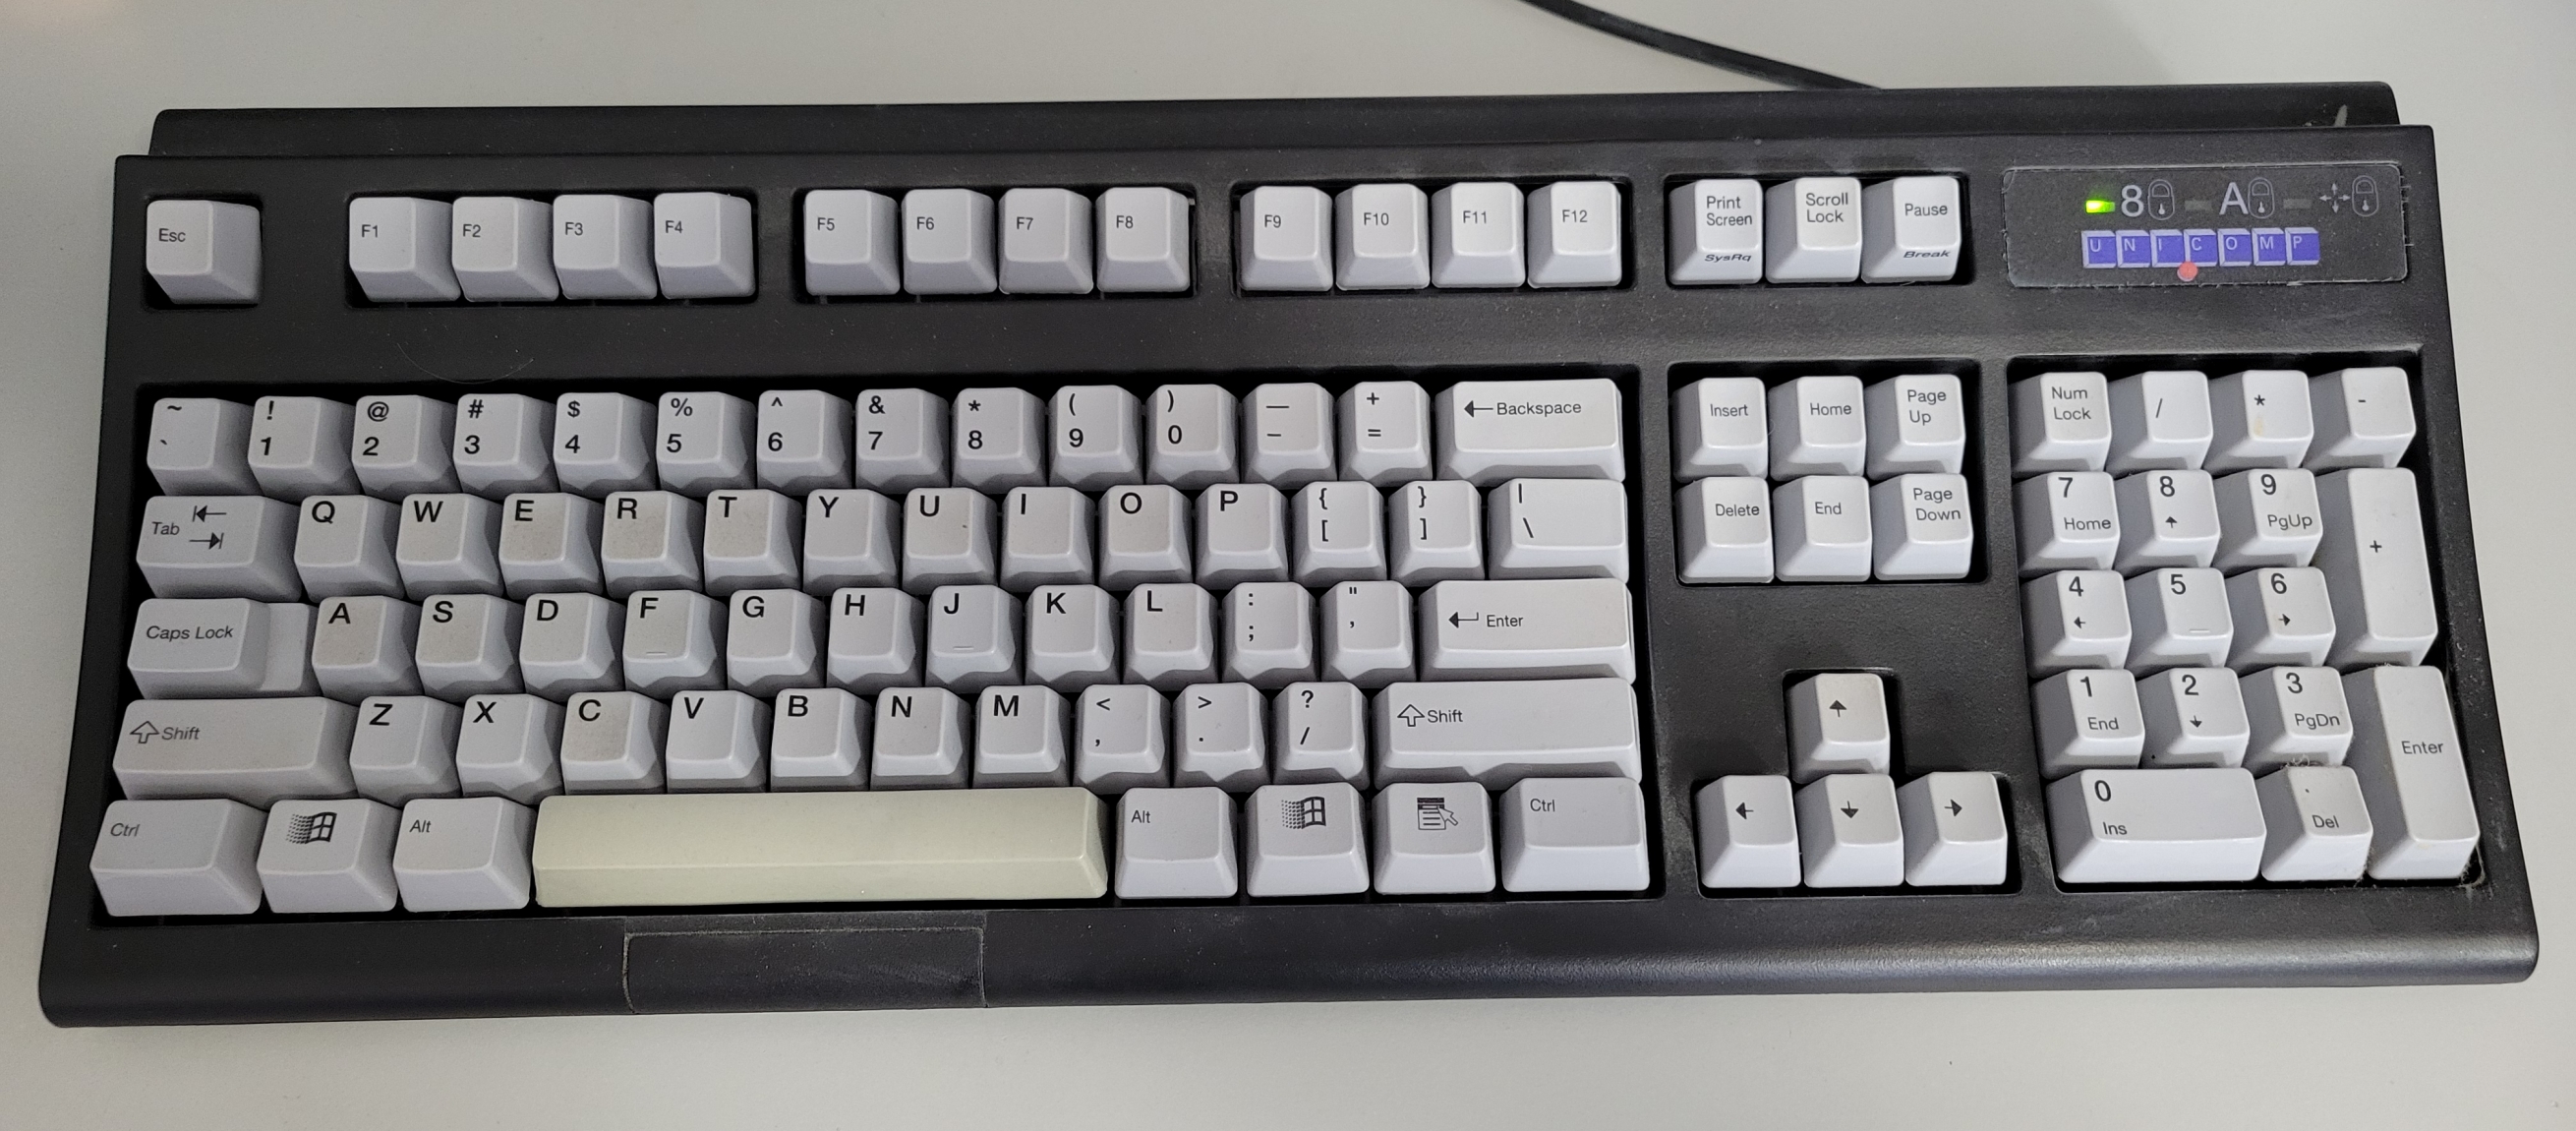 A Unicomp mechanical keybaord with white keys on a black frame.